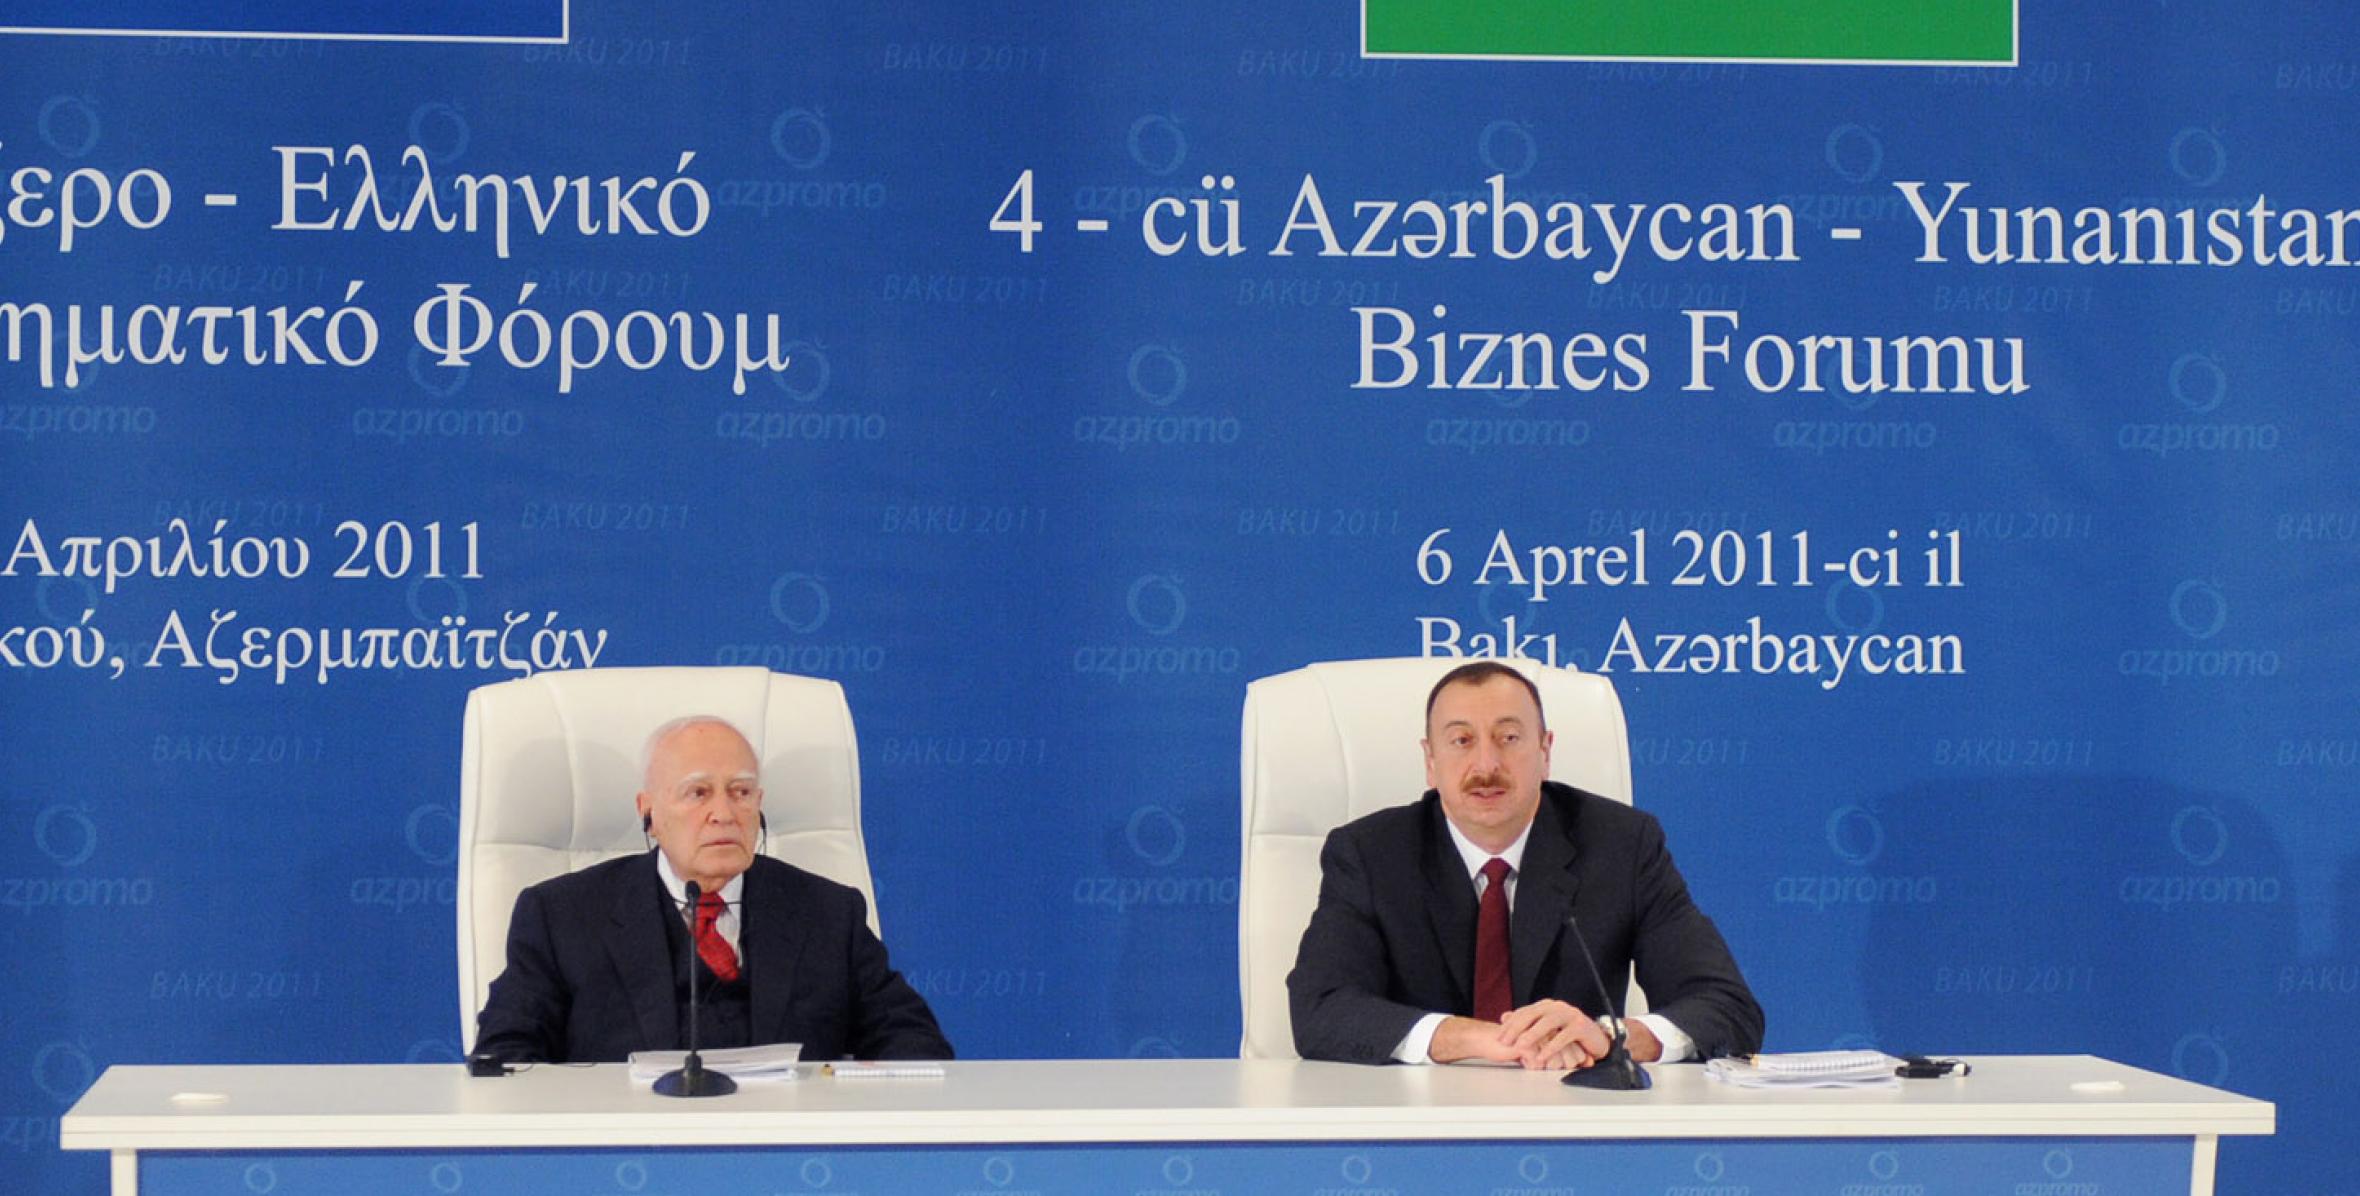 Fourth Azerbaijani-Greek business forum was held in Baku